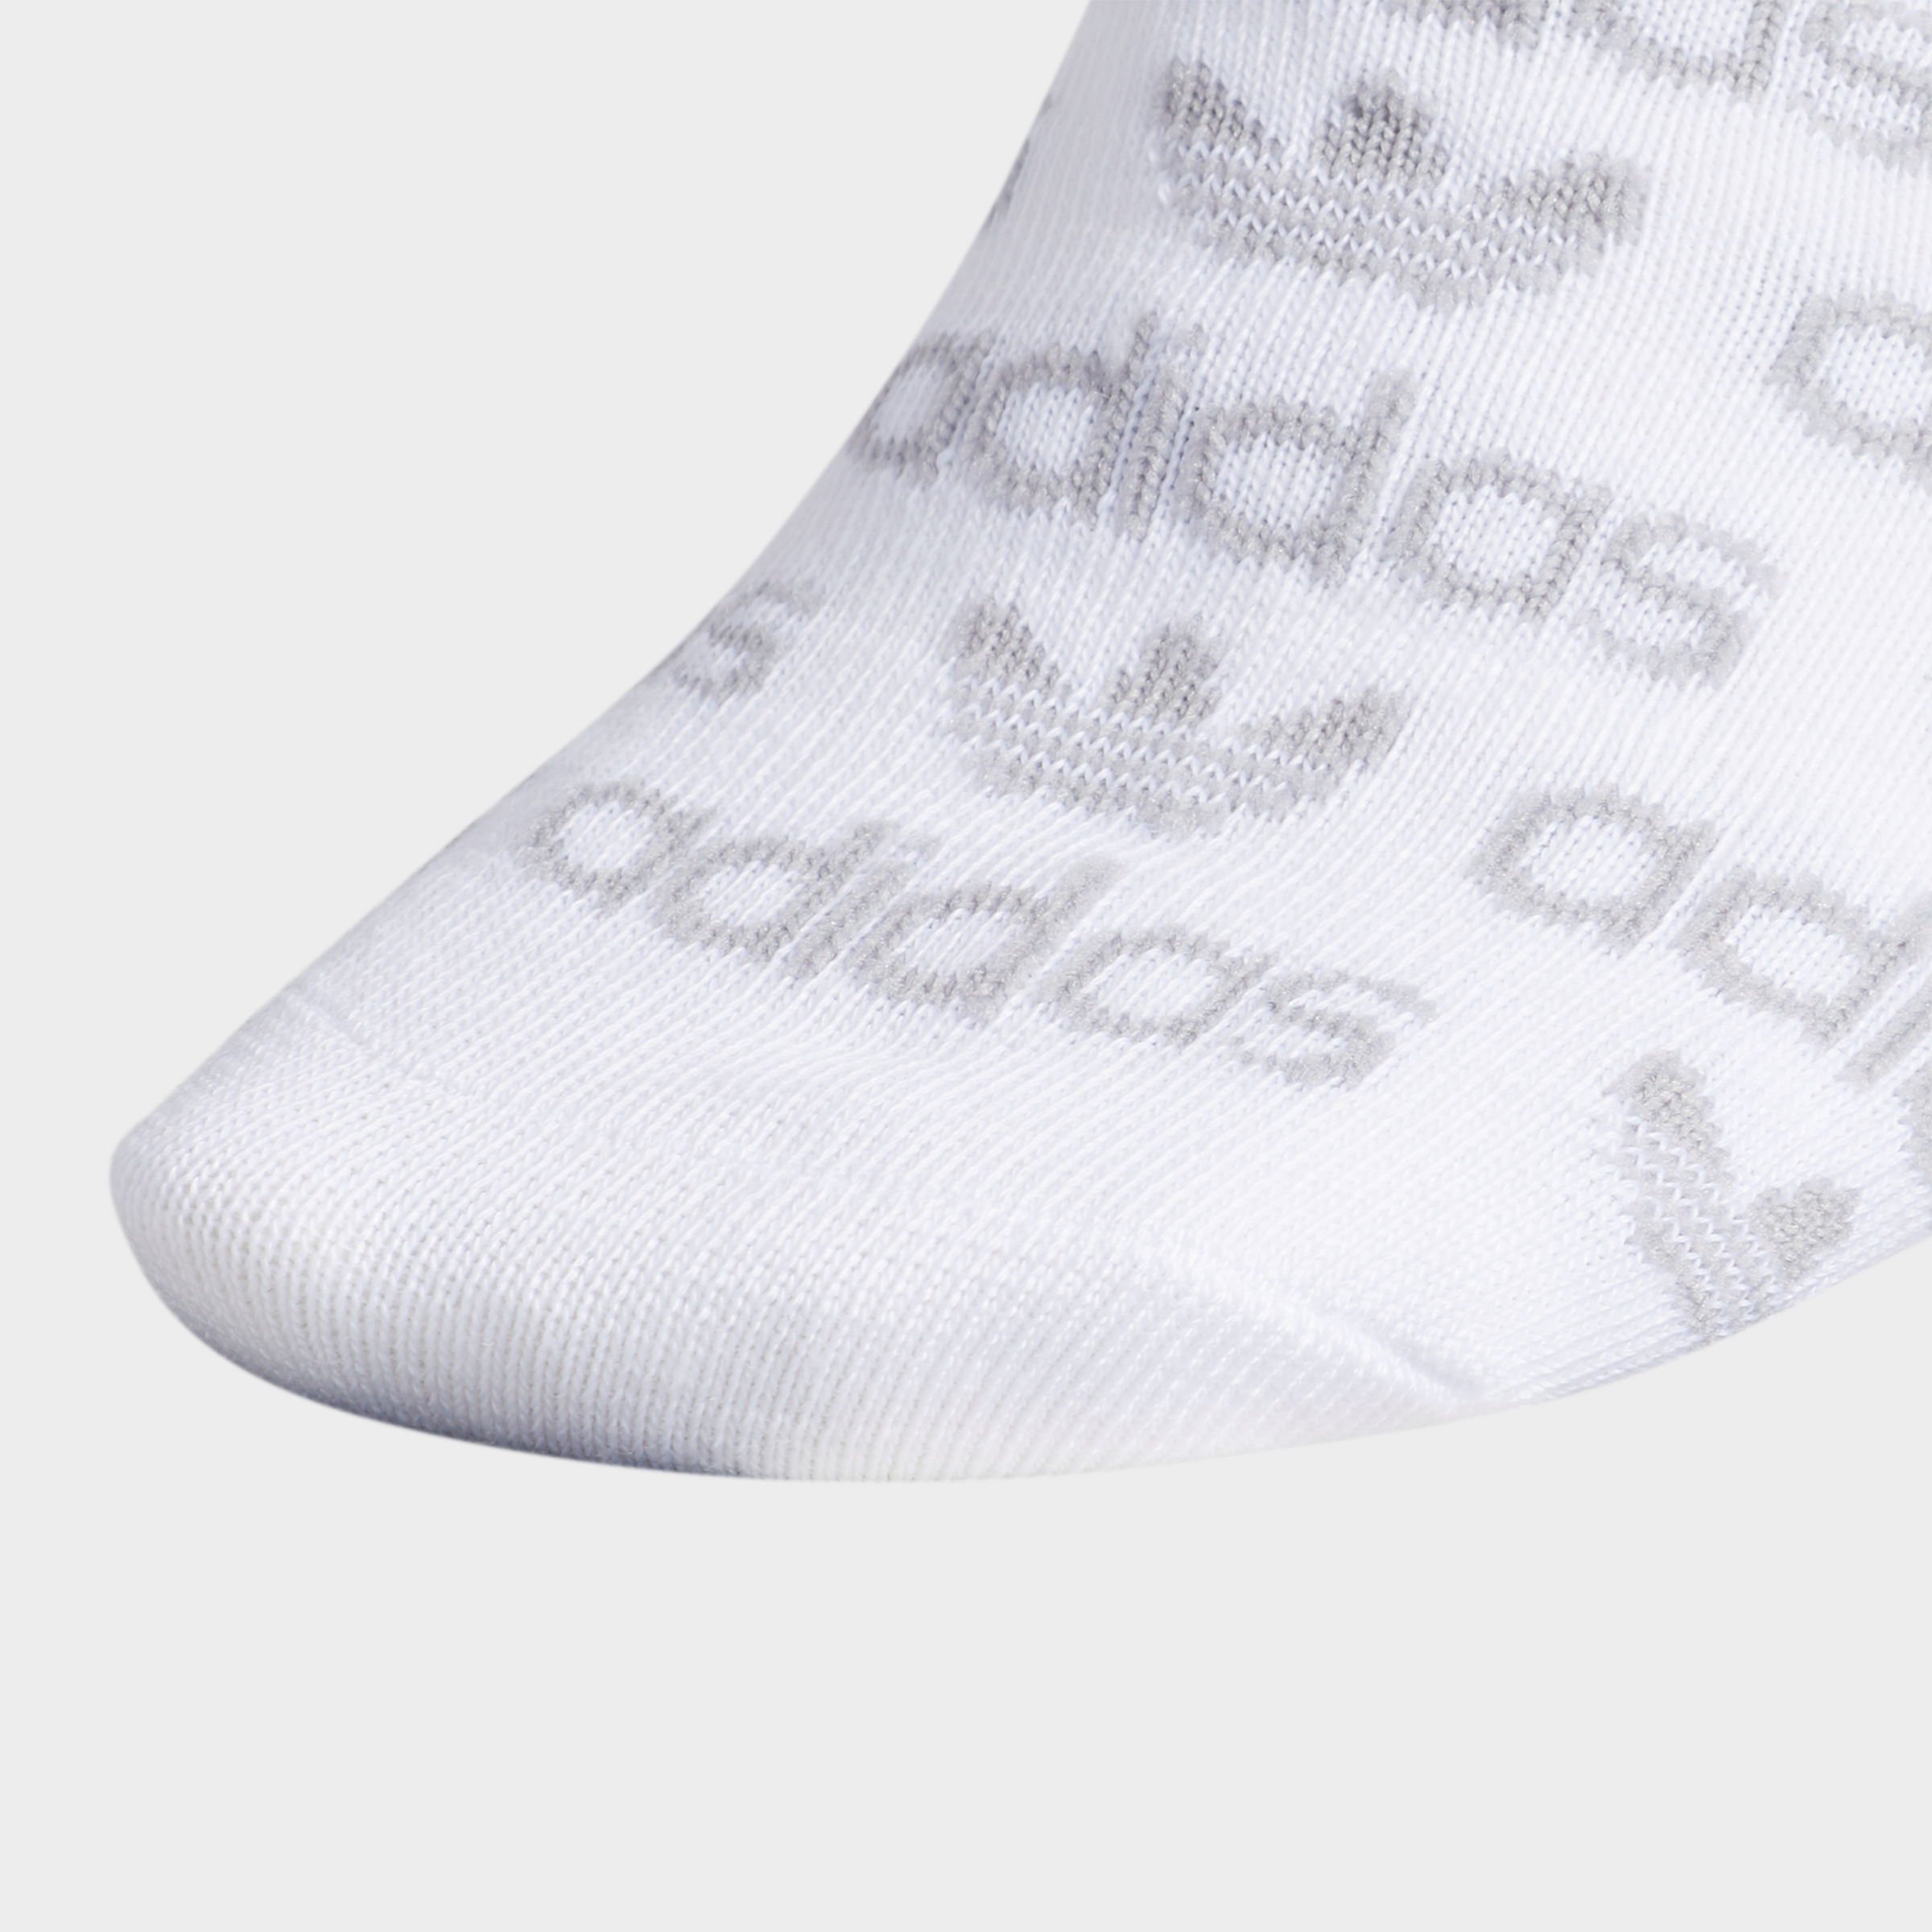 adidas fuzzy socks